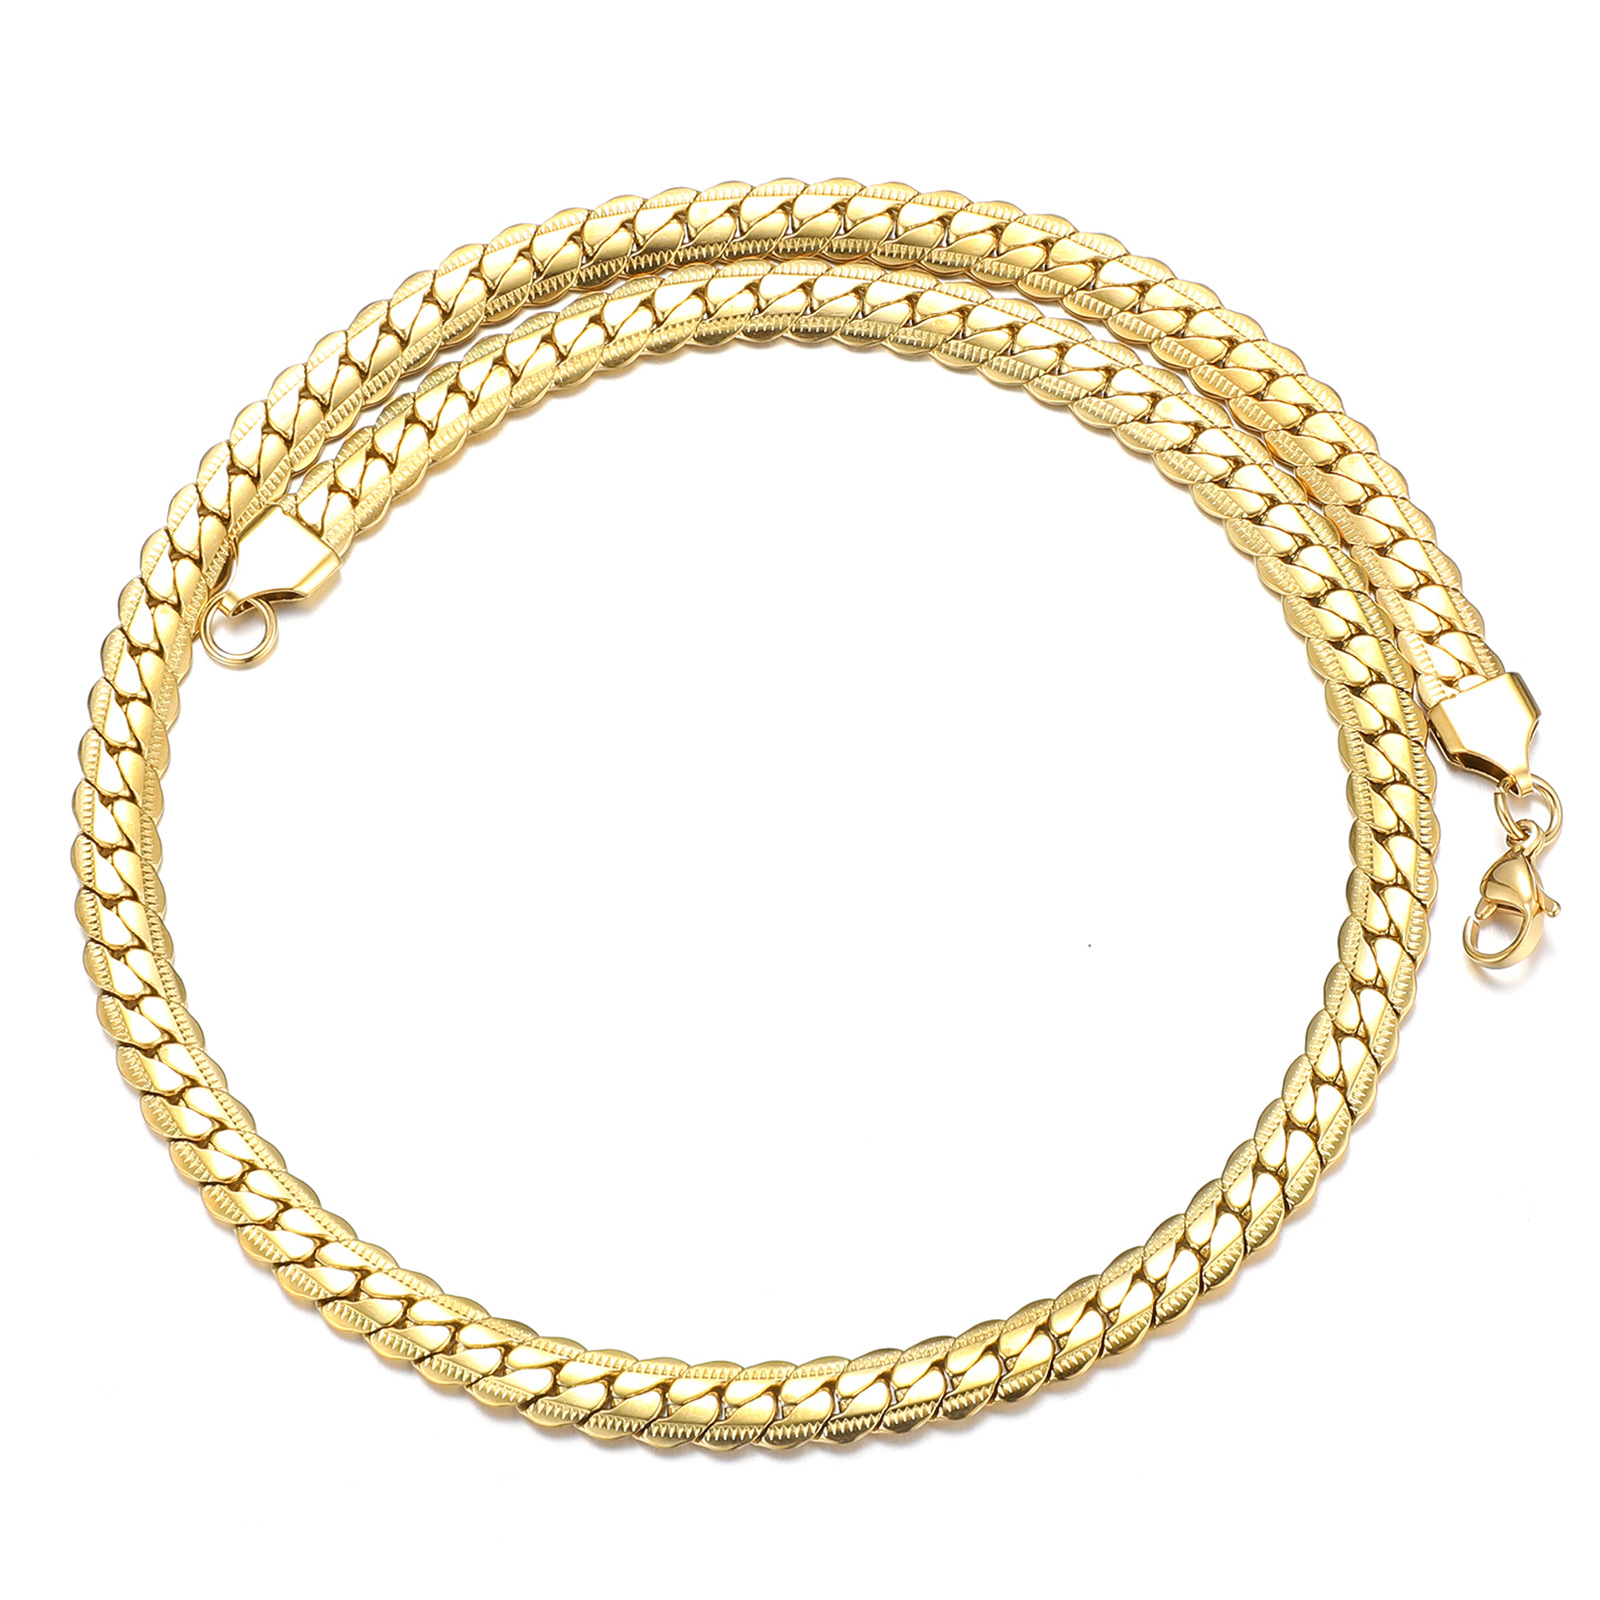 Gold necklace (45cm long) Width 5mm